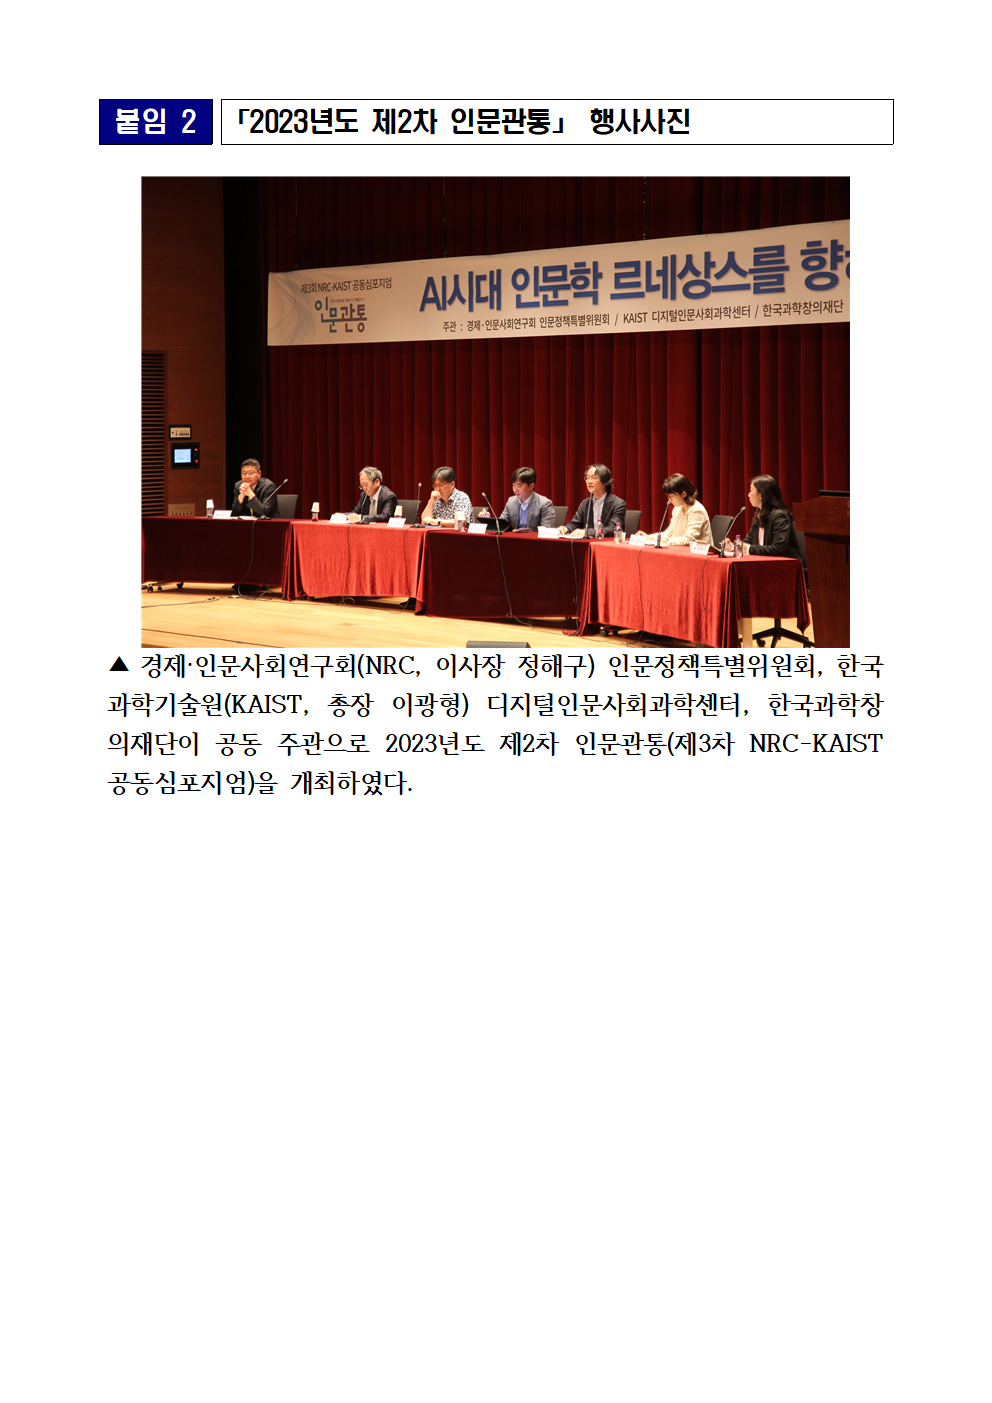 (5/5) 2023년도 제2차 인문관통 개최 보도자료 - 자세한 내용은 하단 참조